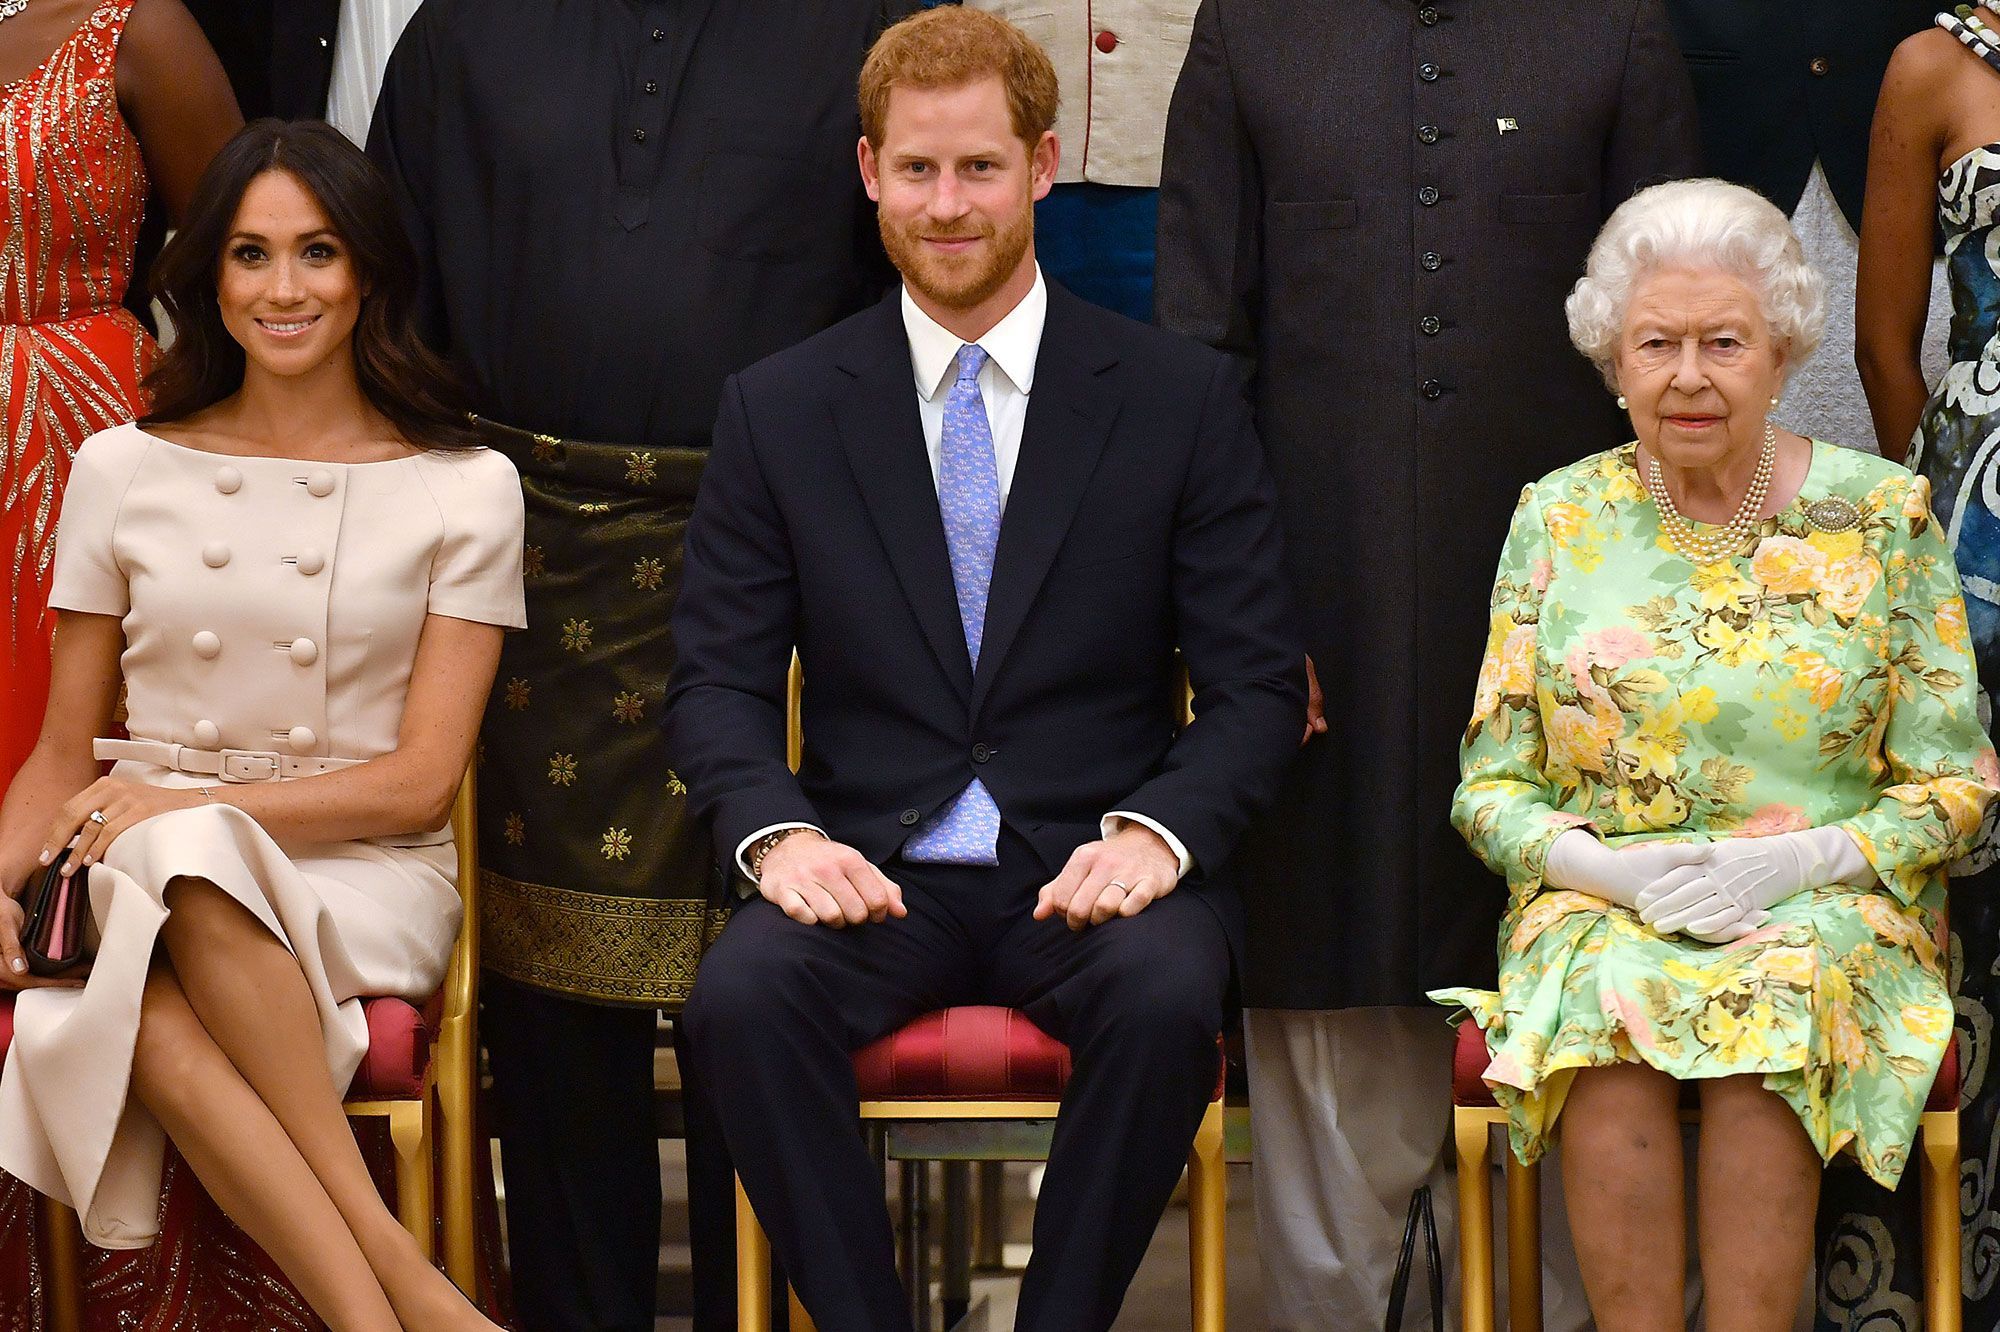 Tensions à Buckingham Palace : La reine Elizabeth II répond au prince Harry et à Meghan Markle